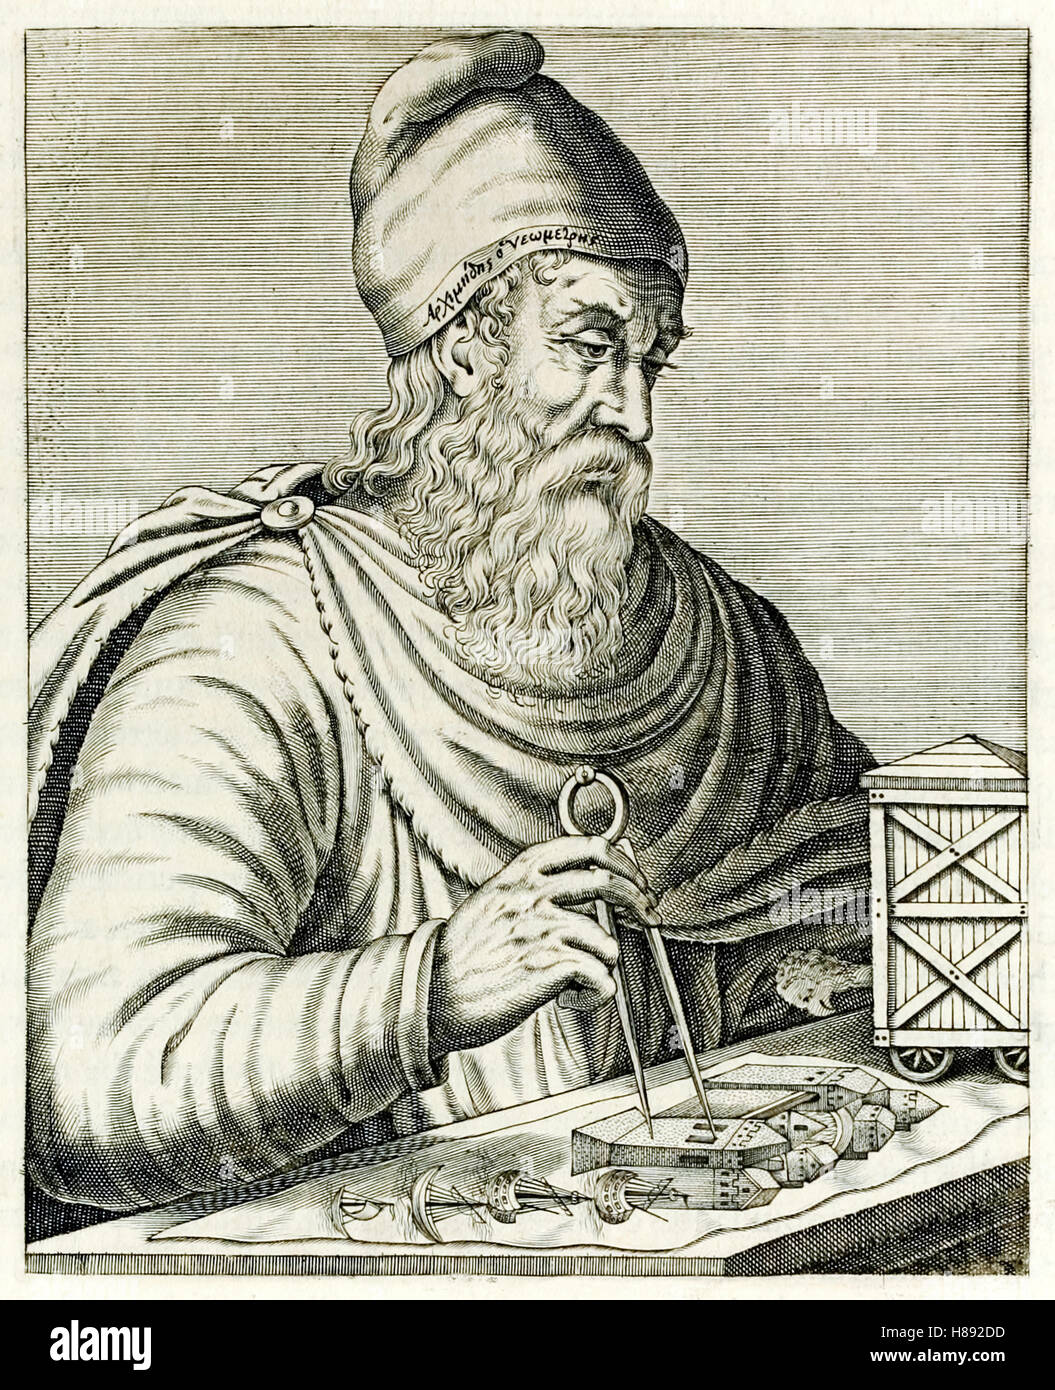 Archimede di Siracusa (287-212BC) Greco antico matematico, fisico, ingegnere, inventore e astronomo dal "vero ritratti…" da André Thévet pubblicato nel 1584. Vedere la descrizione per maggiori informazioni. Foto Stock